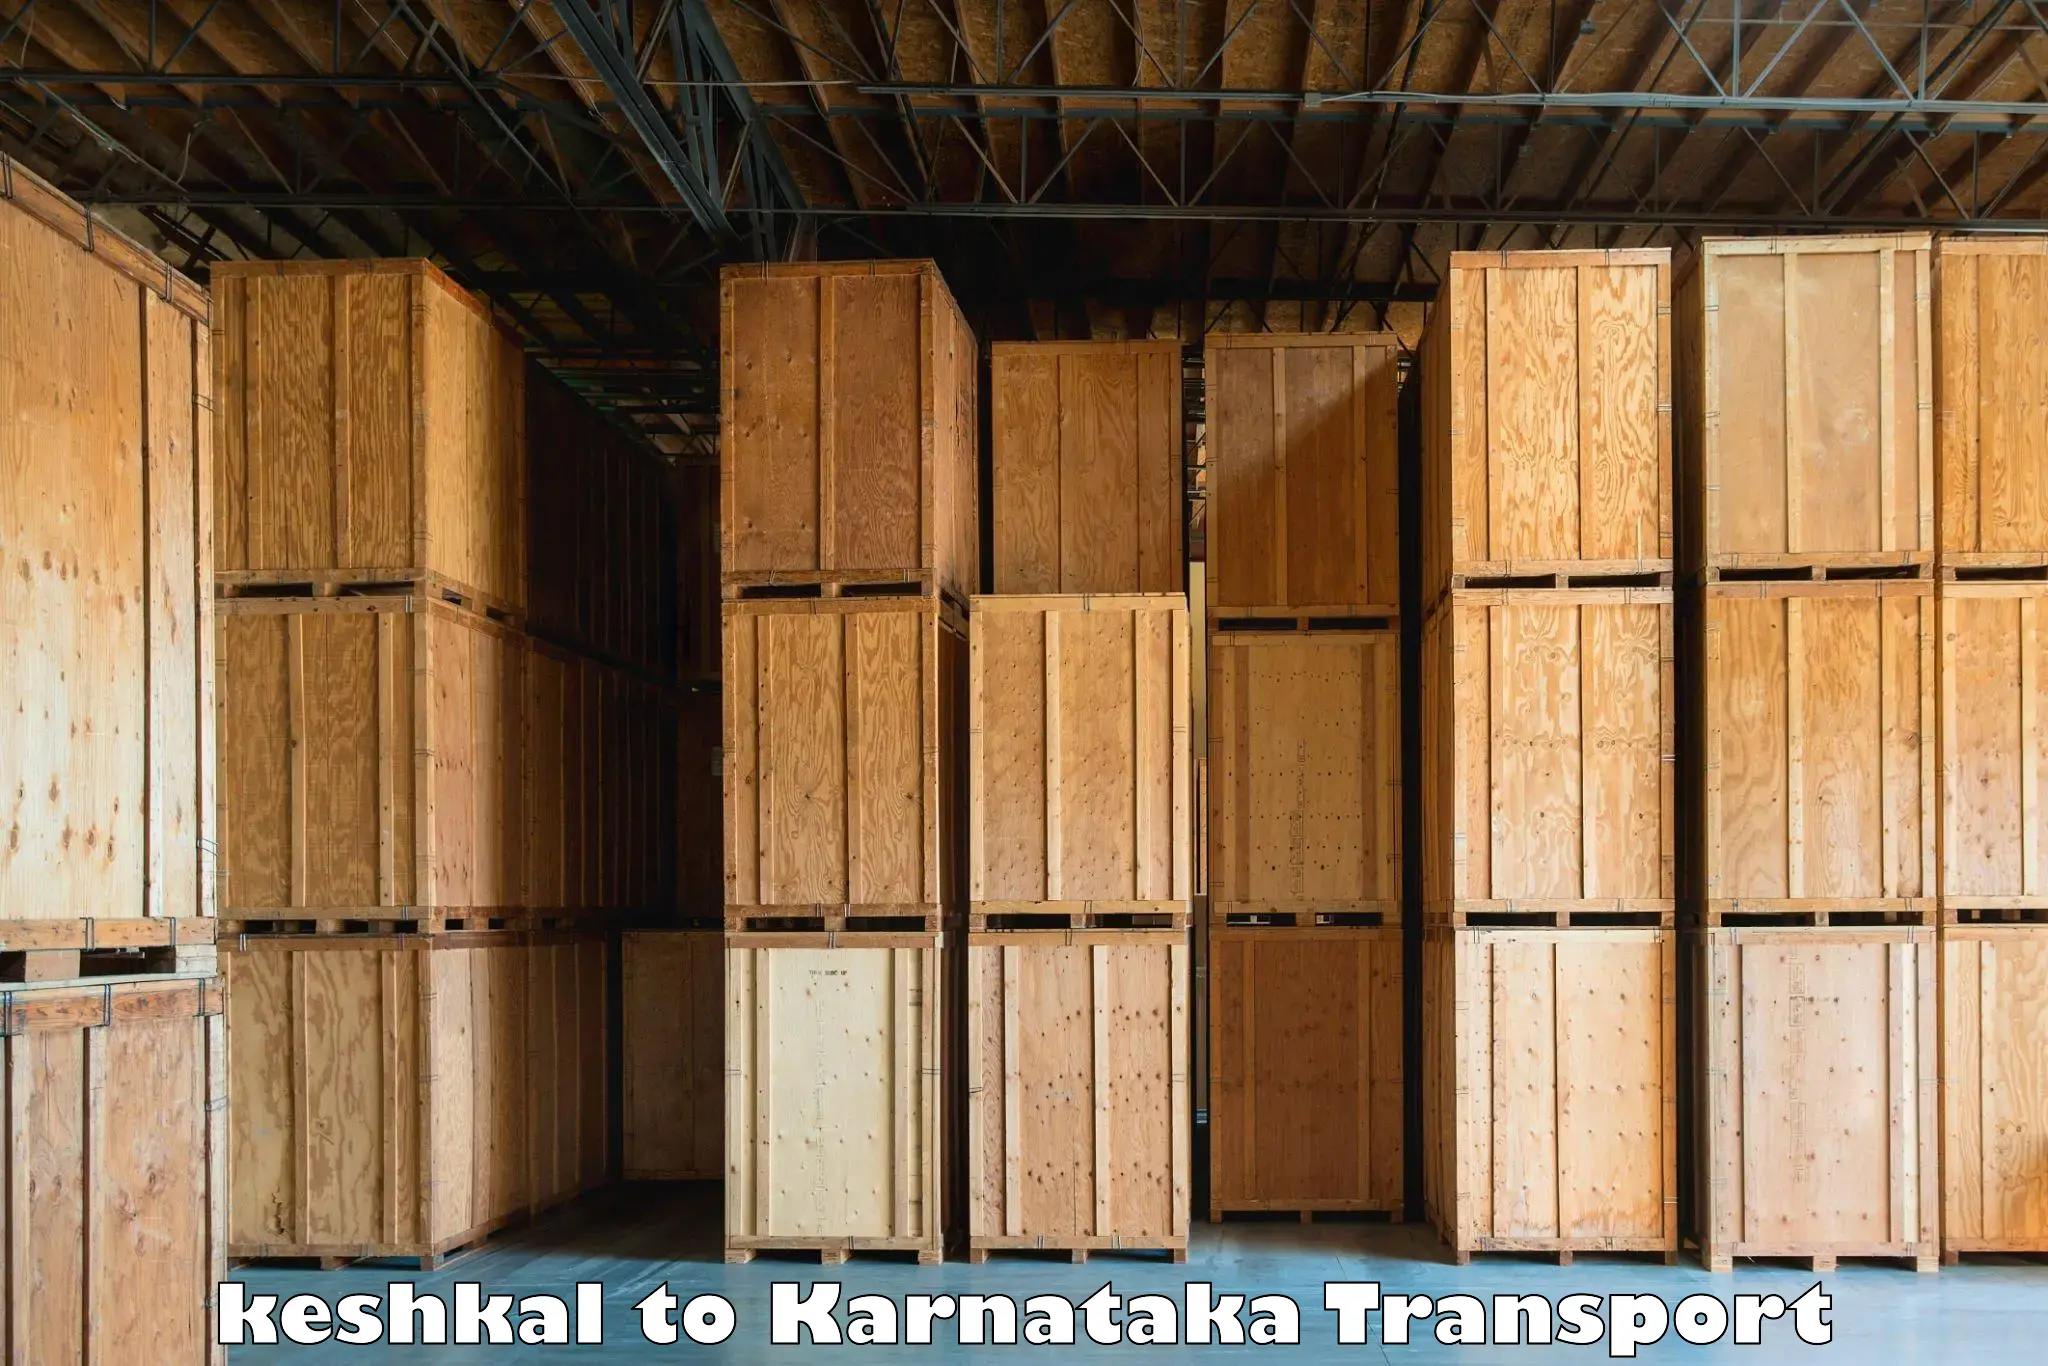 Interstate goods transport in keshkal to Gurmatkal